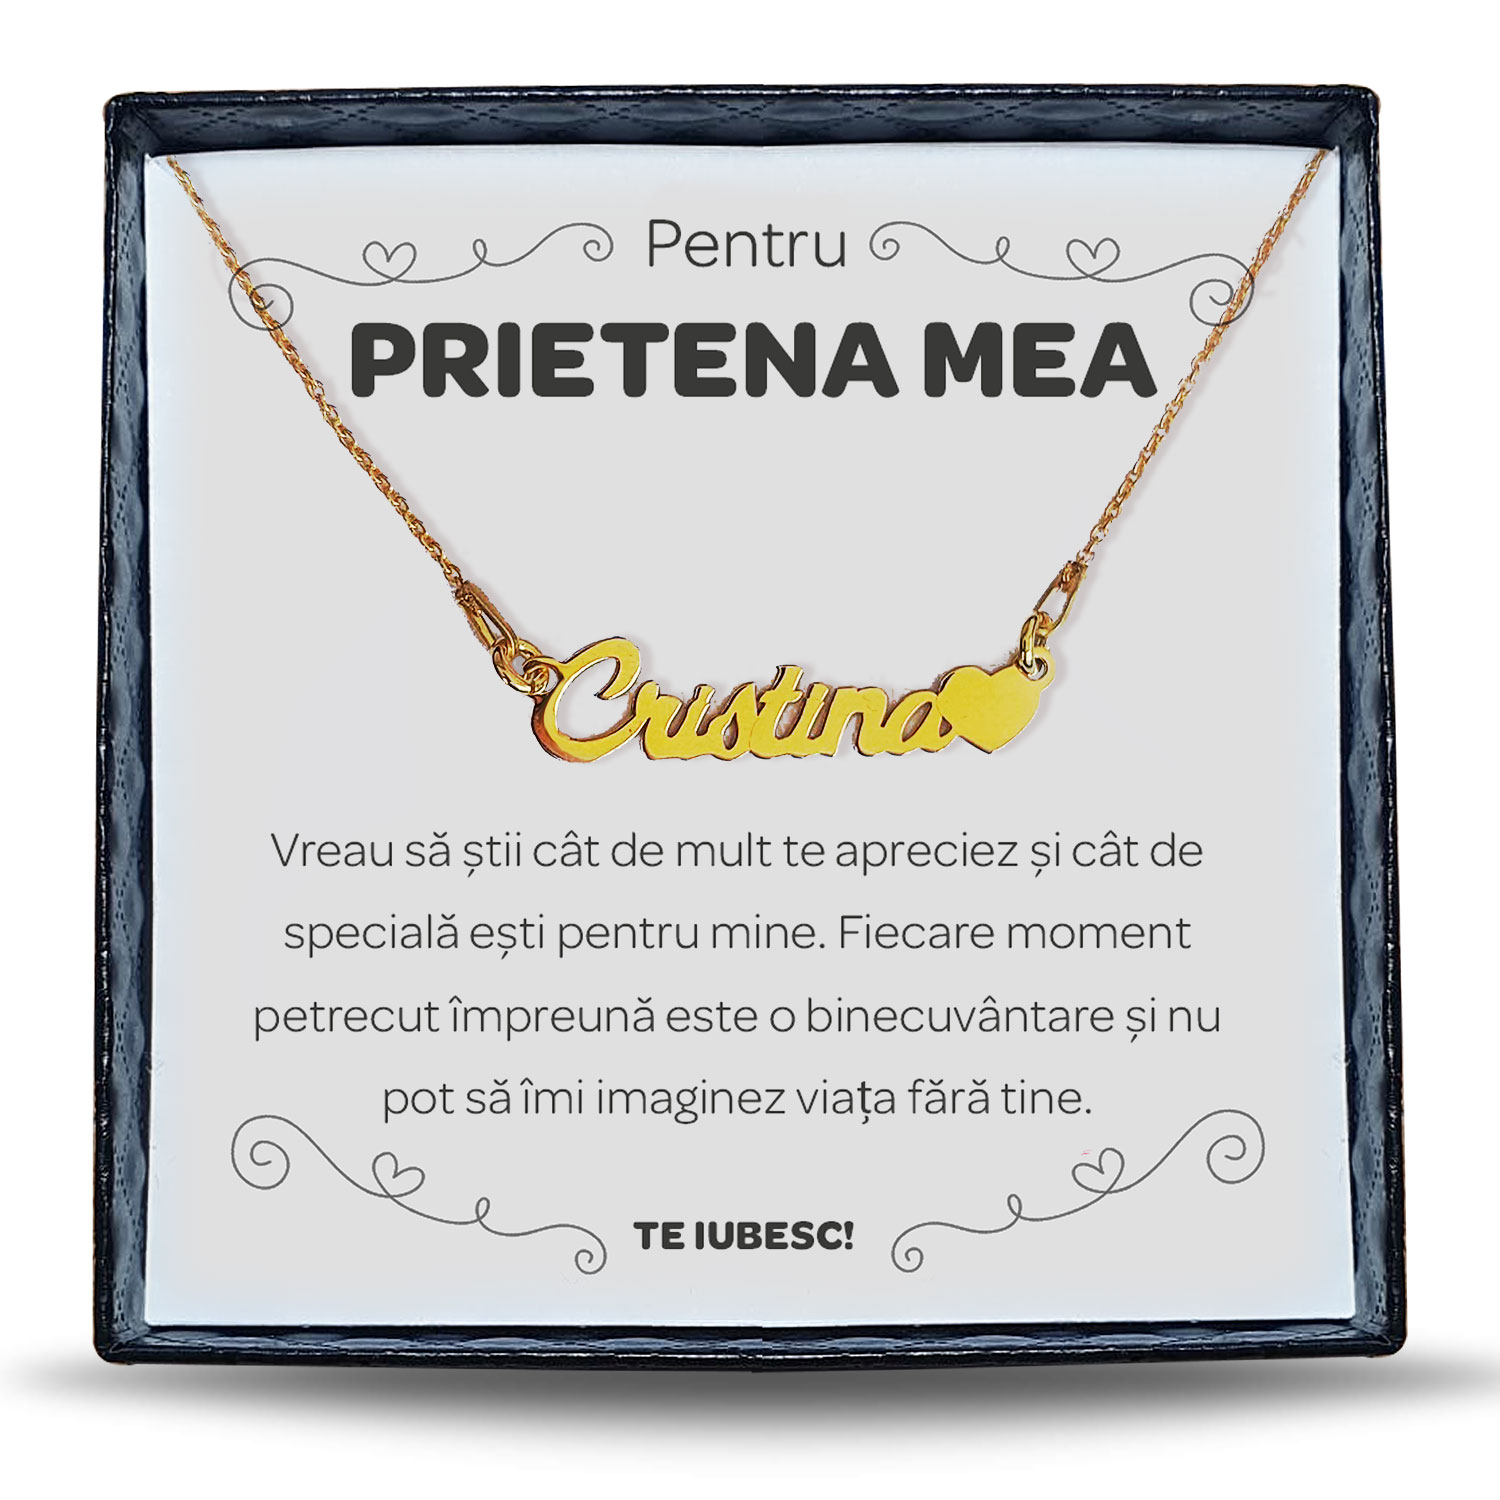 felicitare cu ziua de nastere pentru prietena Pentru Prietena - Colier Personalizat cu Nume la alegere din argint placat cu aur 24K + cutiuta cu mesaj personalizat pentru Prietena